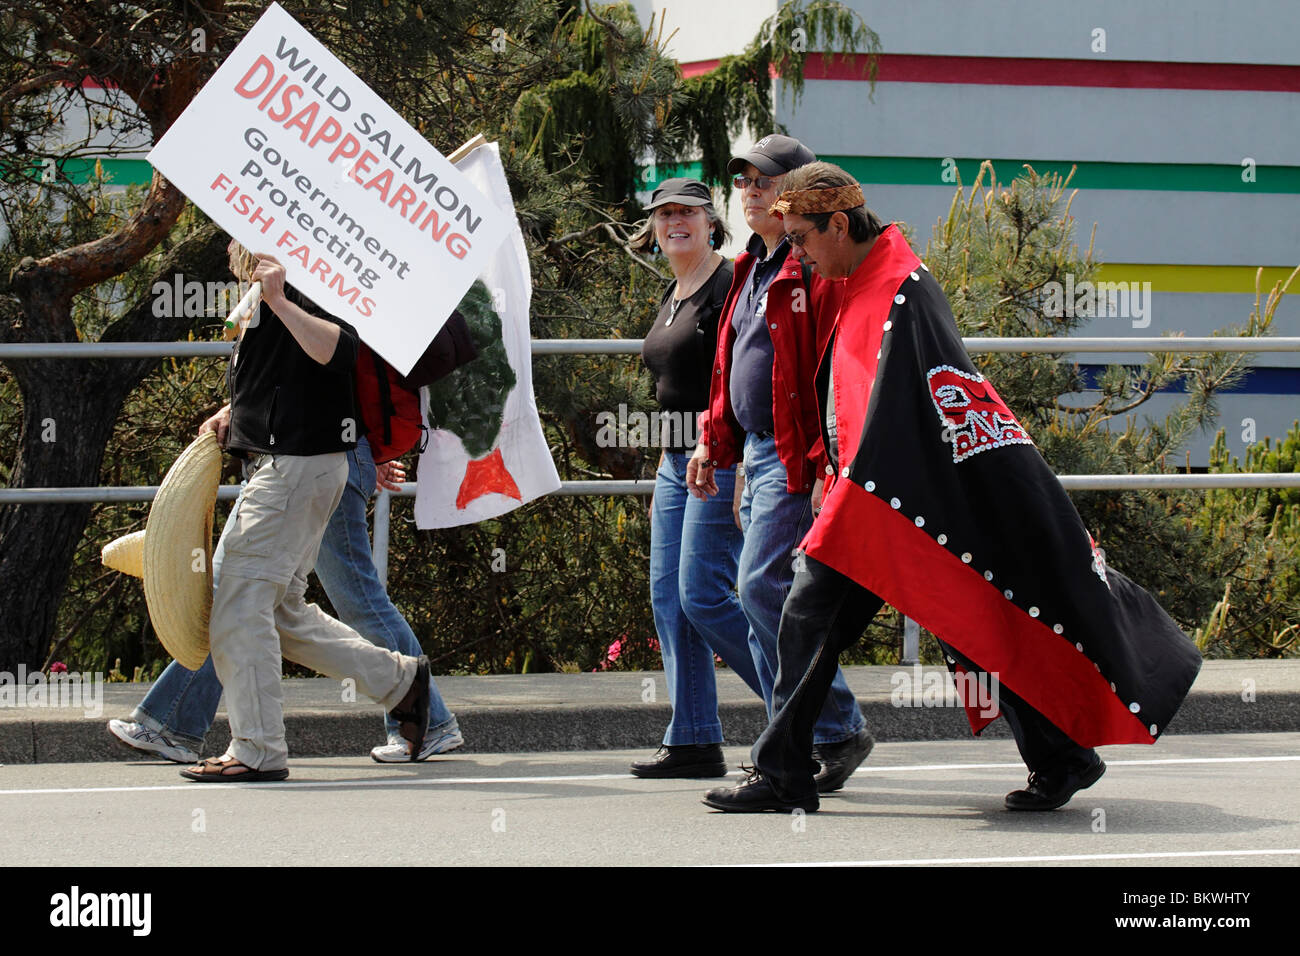 Demonstranten für Bestände, speichern die Wildlachs-Victoria, British Columbia, Kanada. Stockfoto